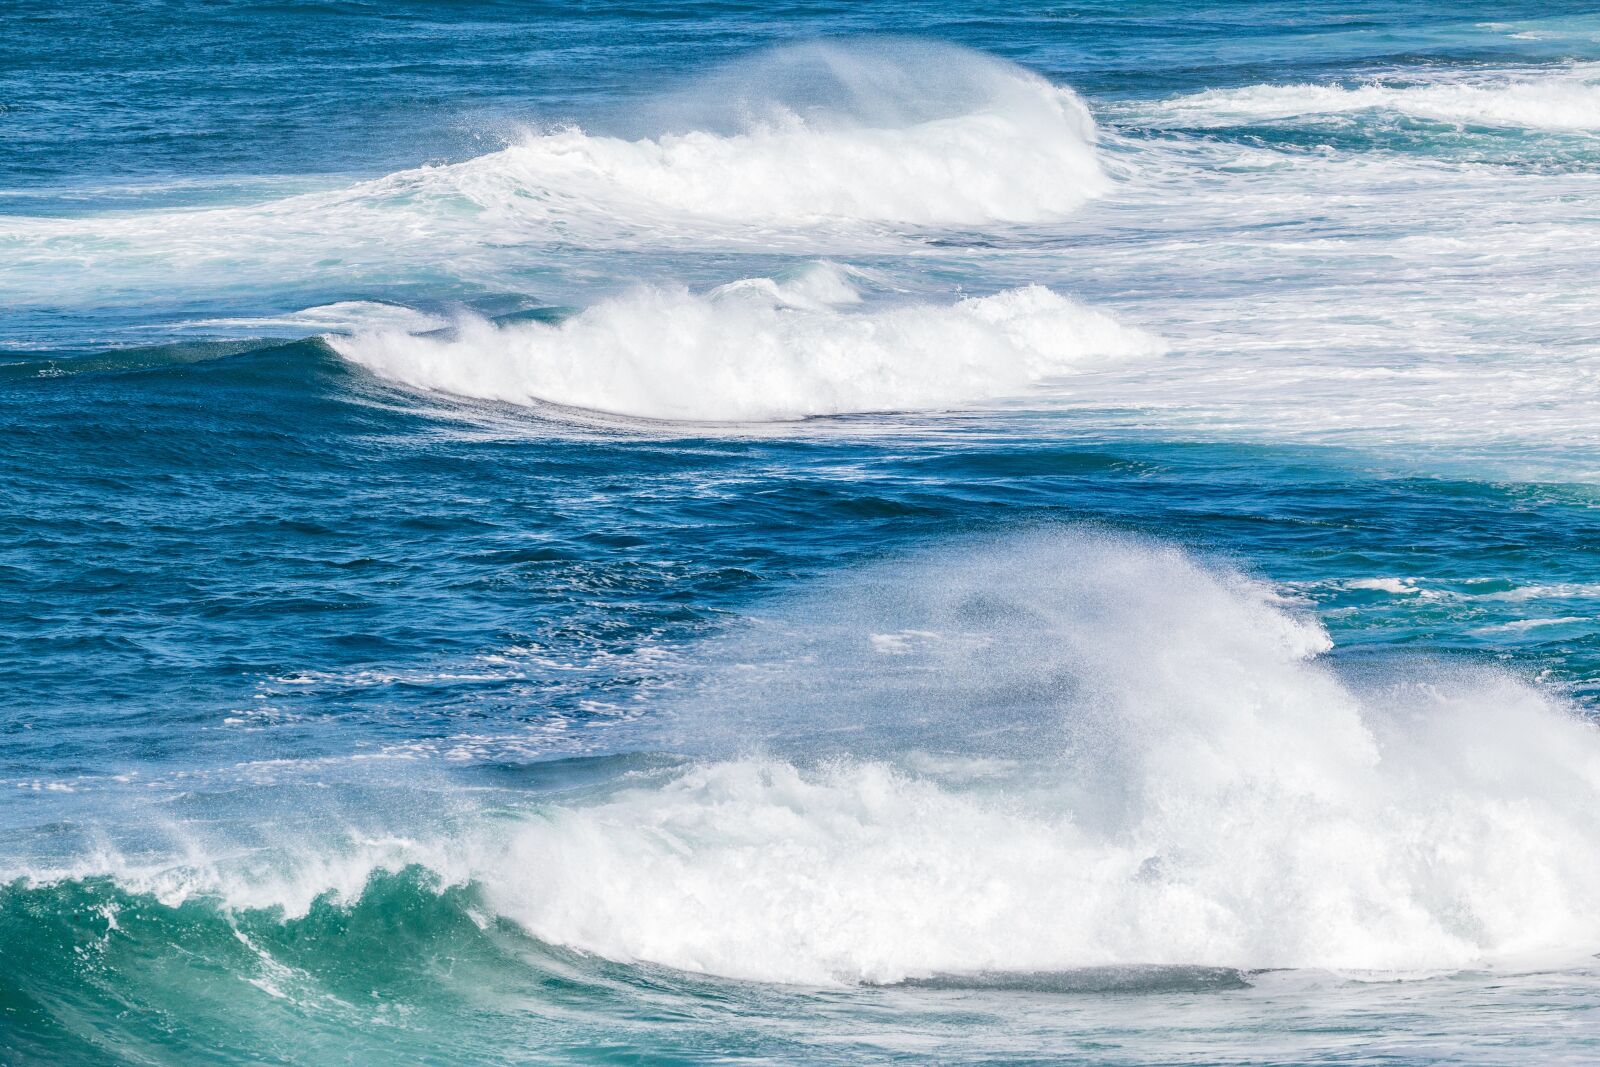 Canon EOS 70D sample photo. "Waves, sea, ocean" photography